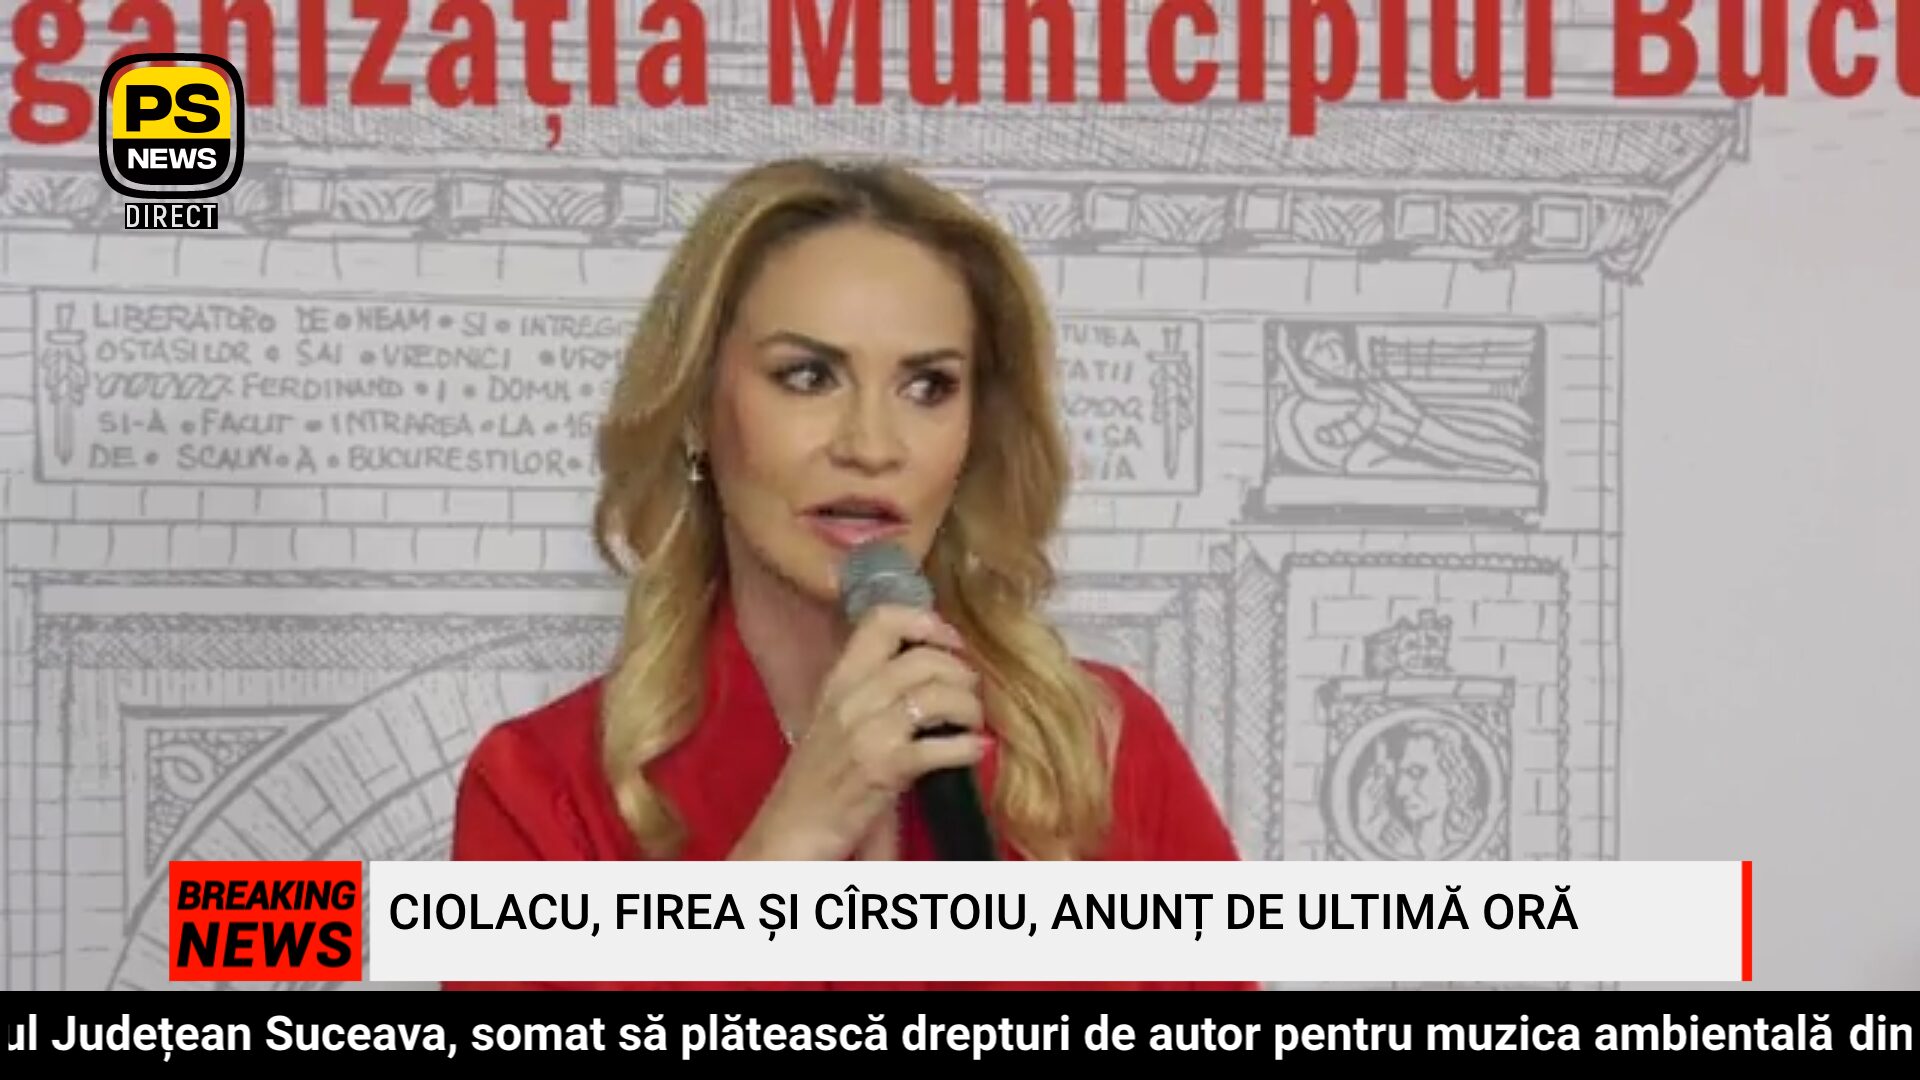 PS News TV | Ciolacu, Firea și Cîrstoiu, anunț de ultimă oră